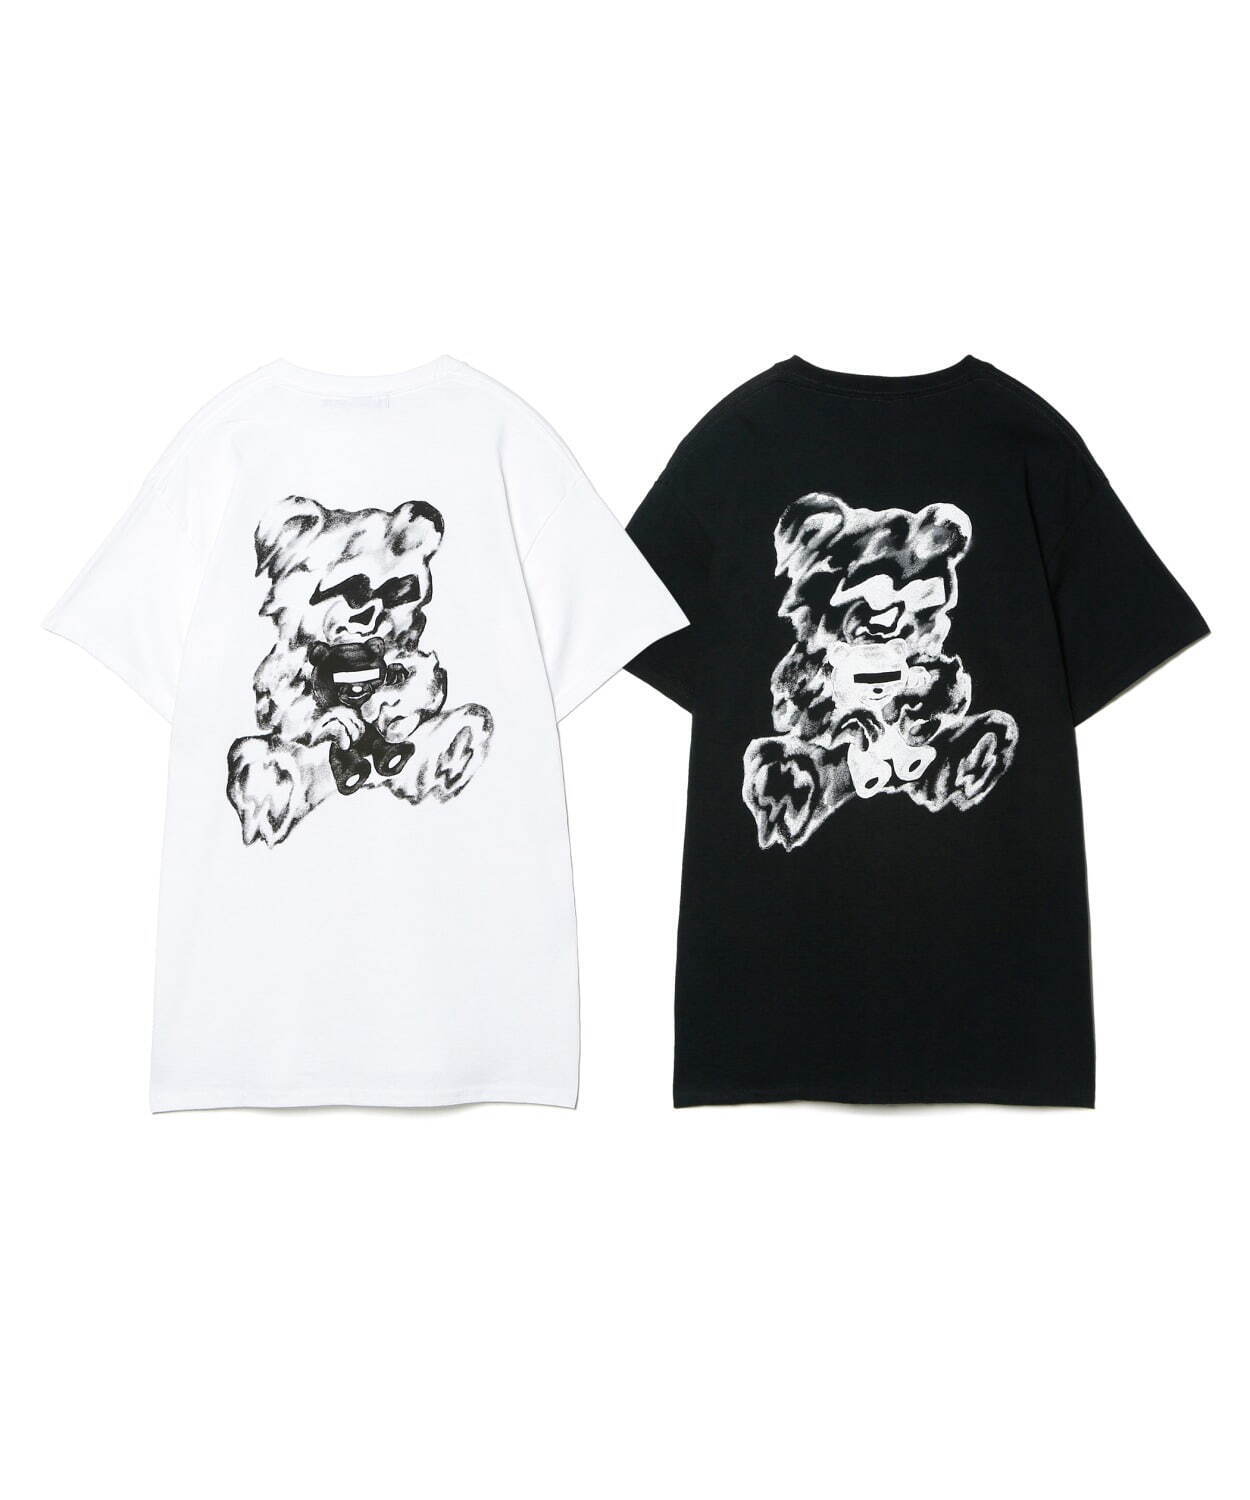 Tシャツ(ホワイト、ブラック) 8,250円